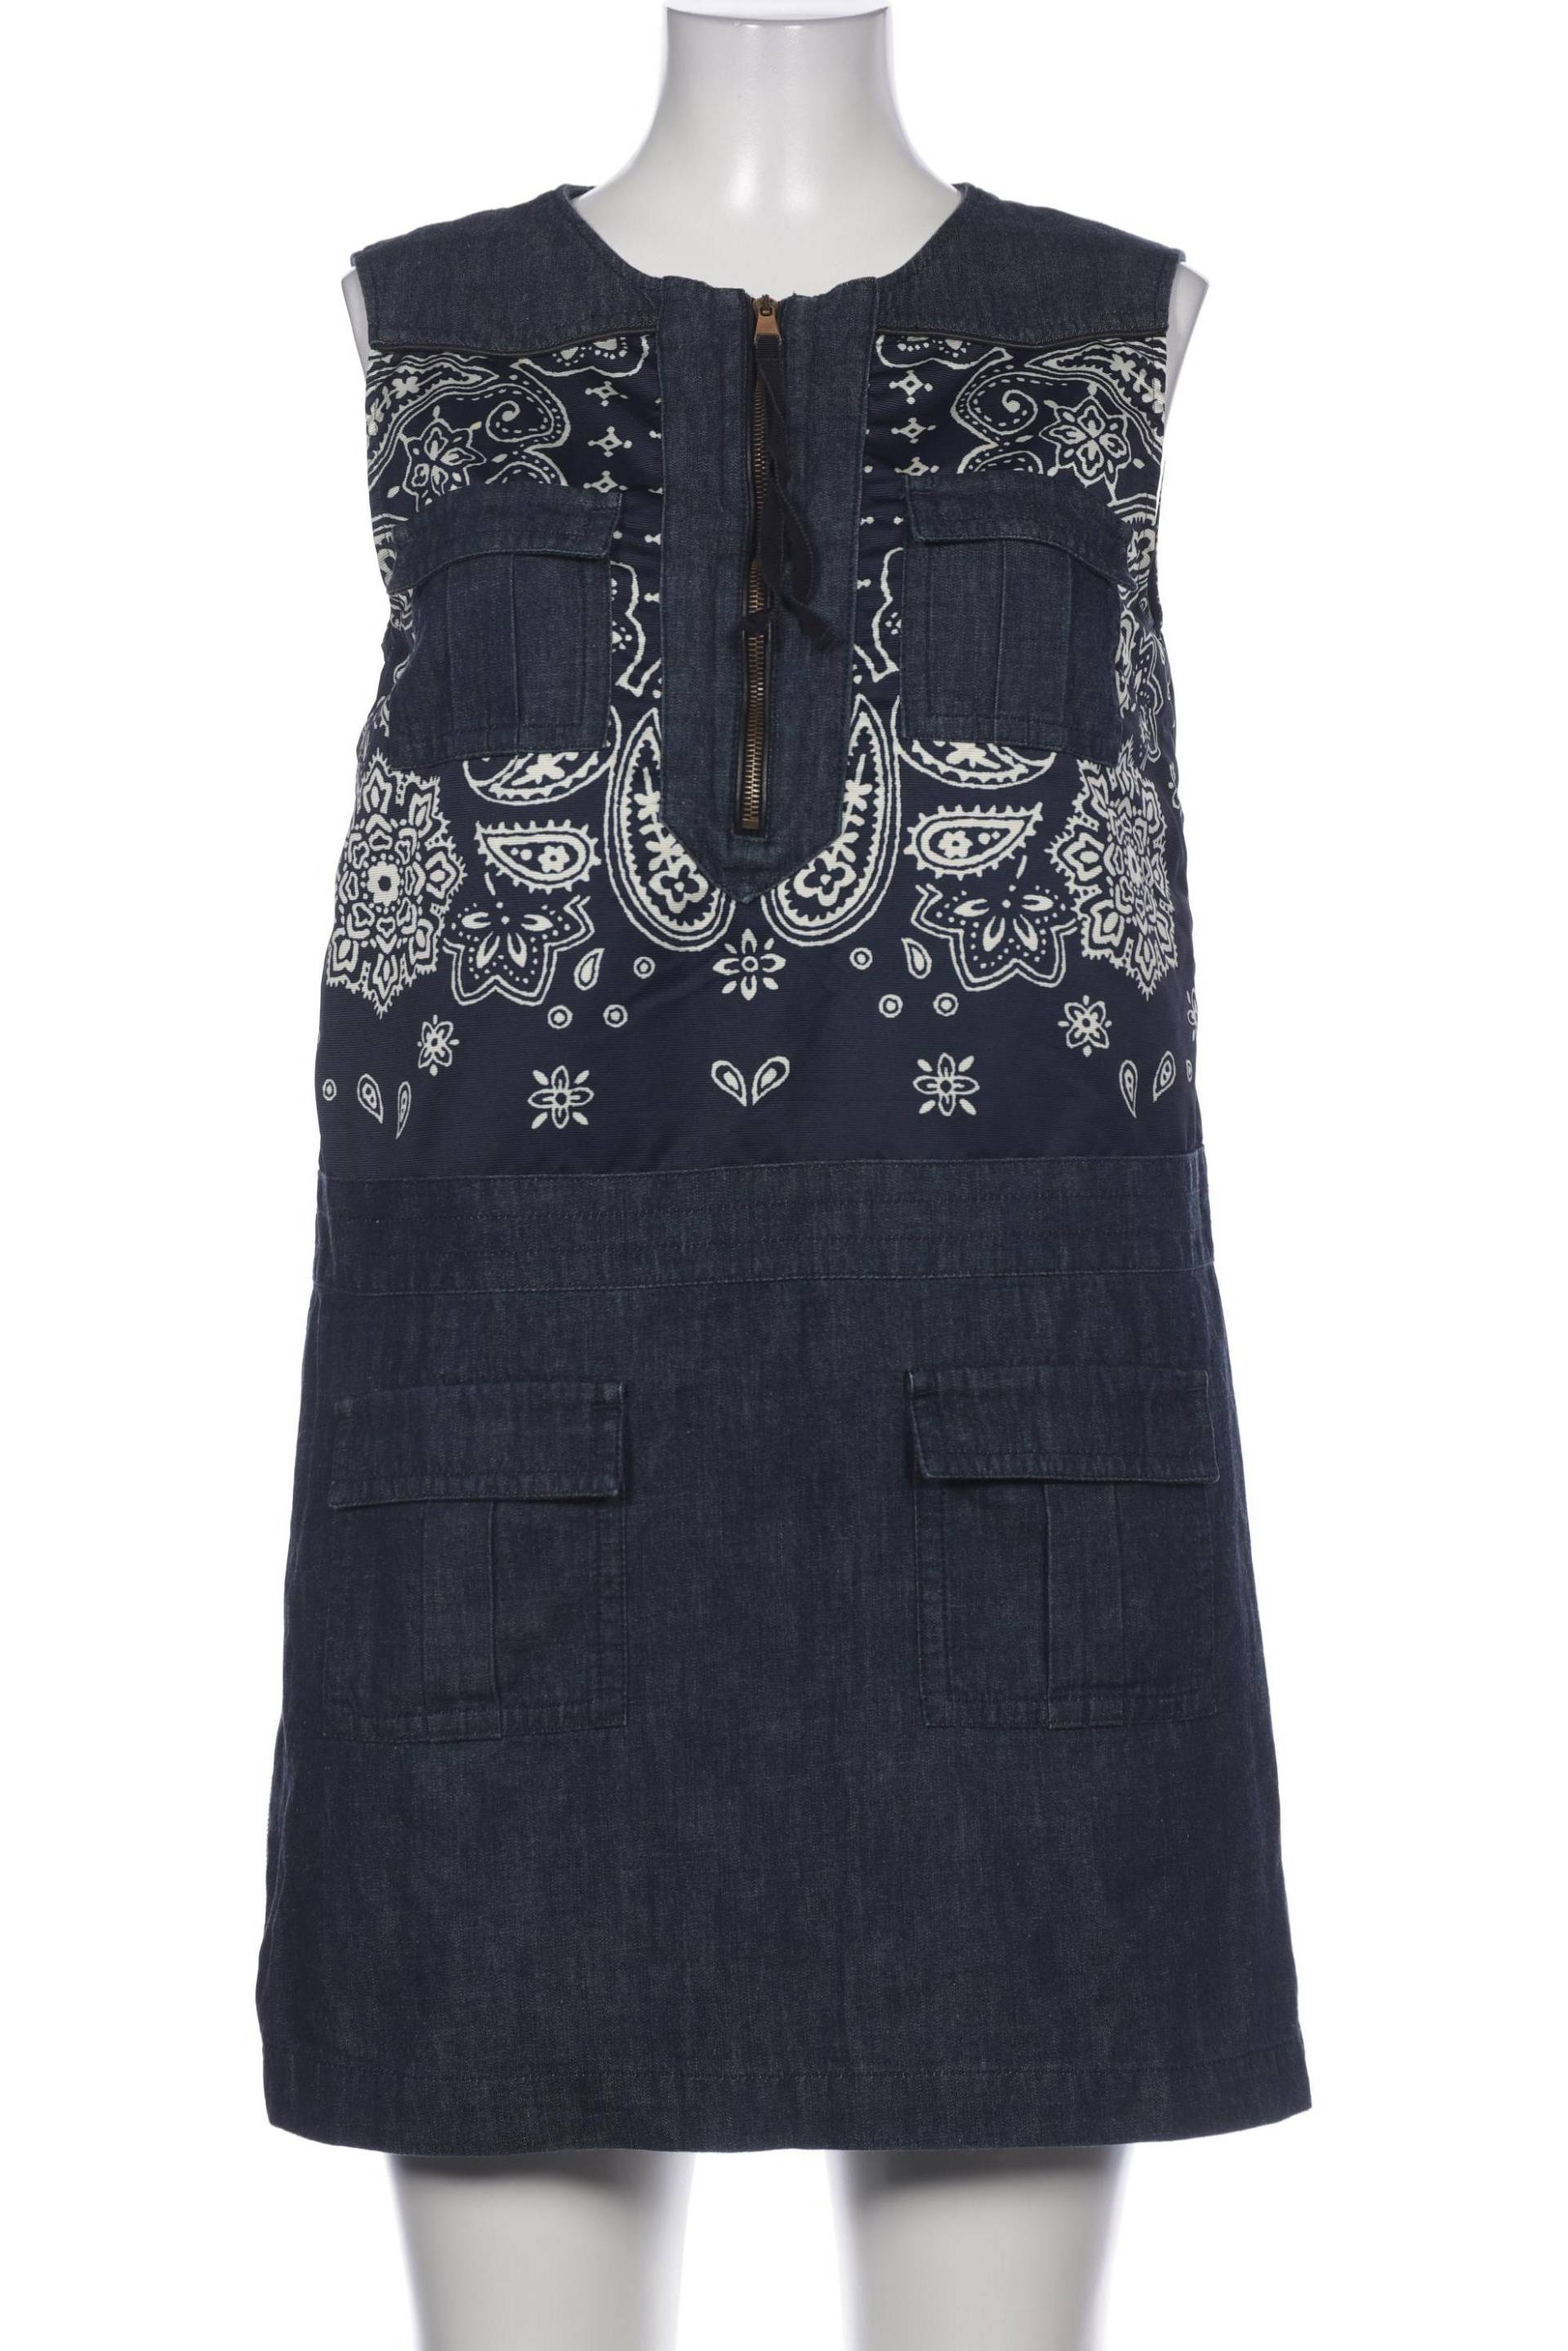 Moncler Damen Kleid, marineblau, Gr. 48 von Moncler